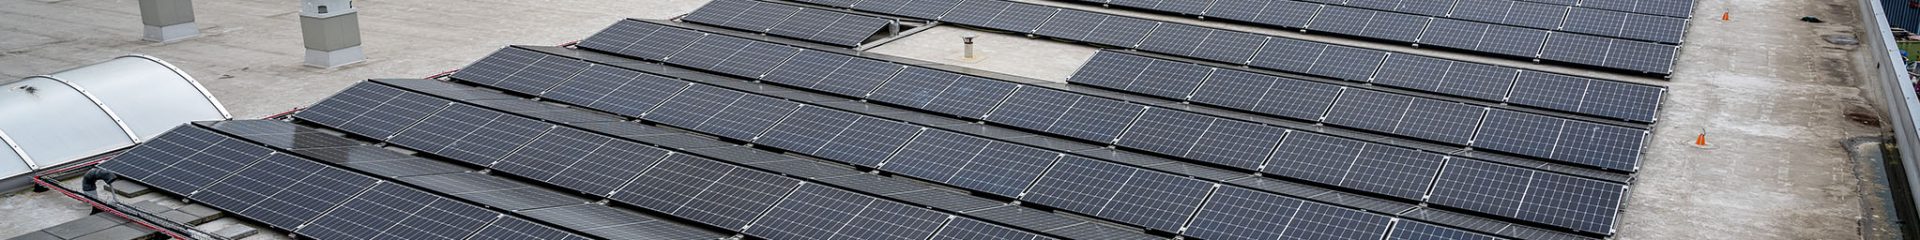 Solar Construct Nederland - montagesystemen - plat dak - platte daken